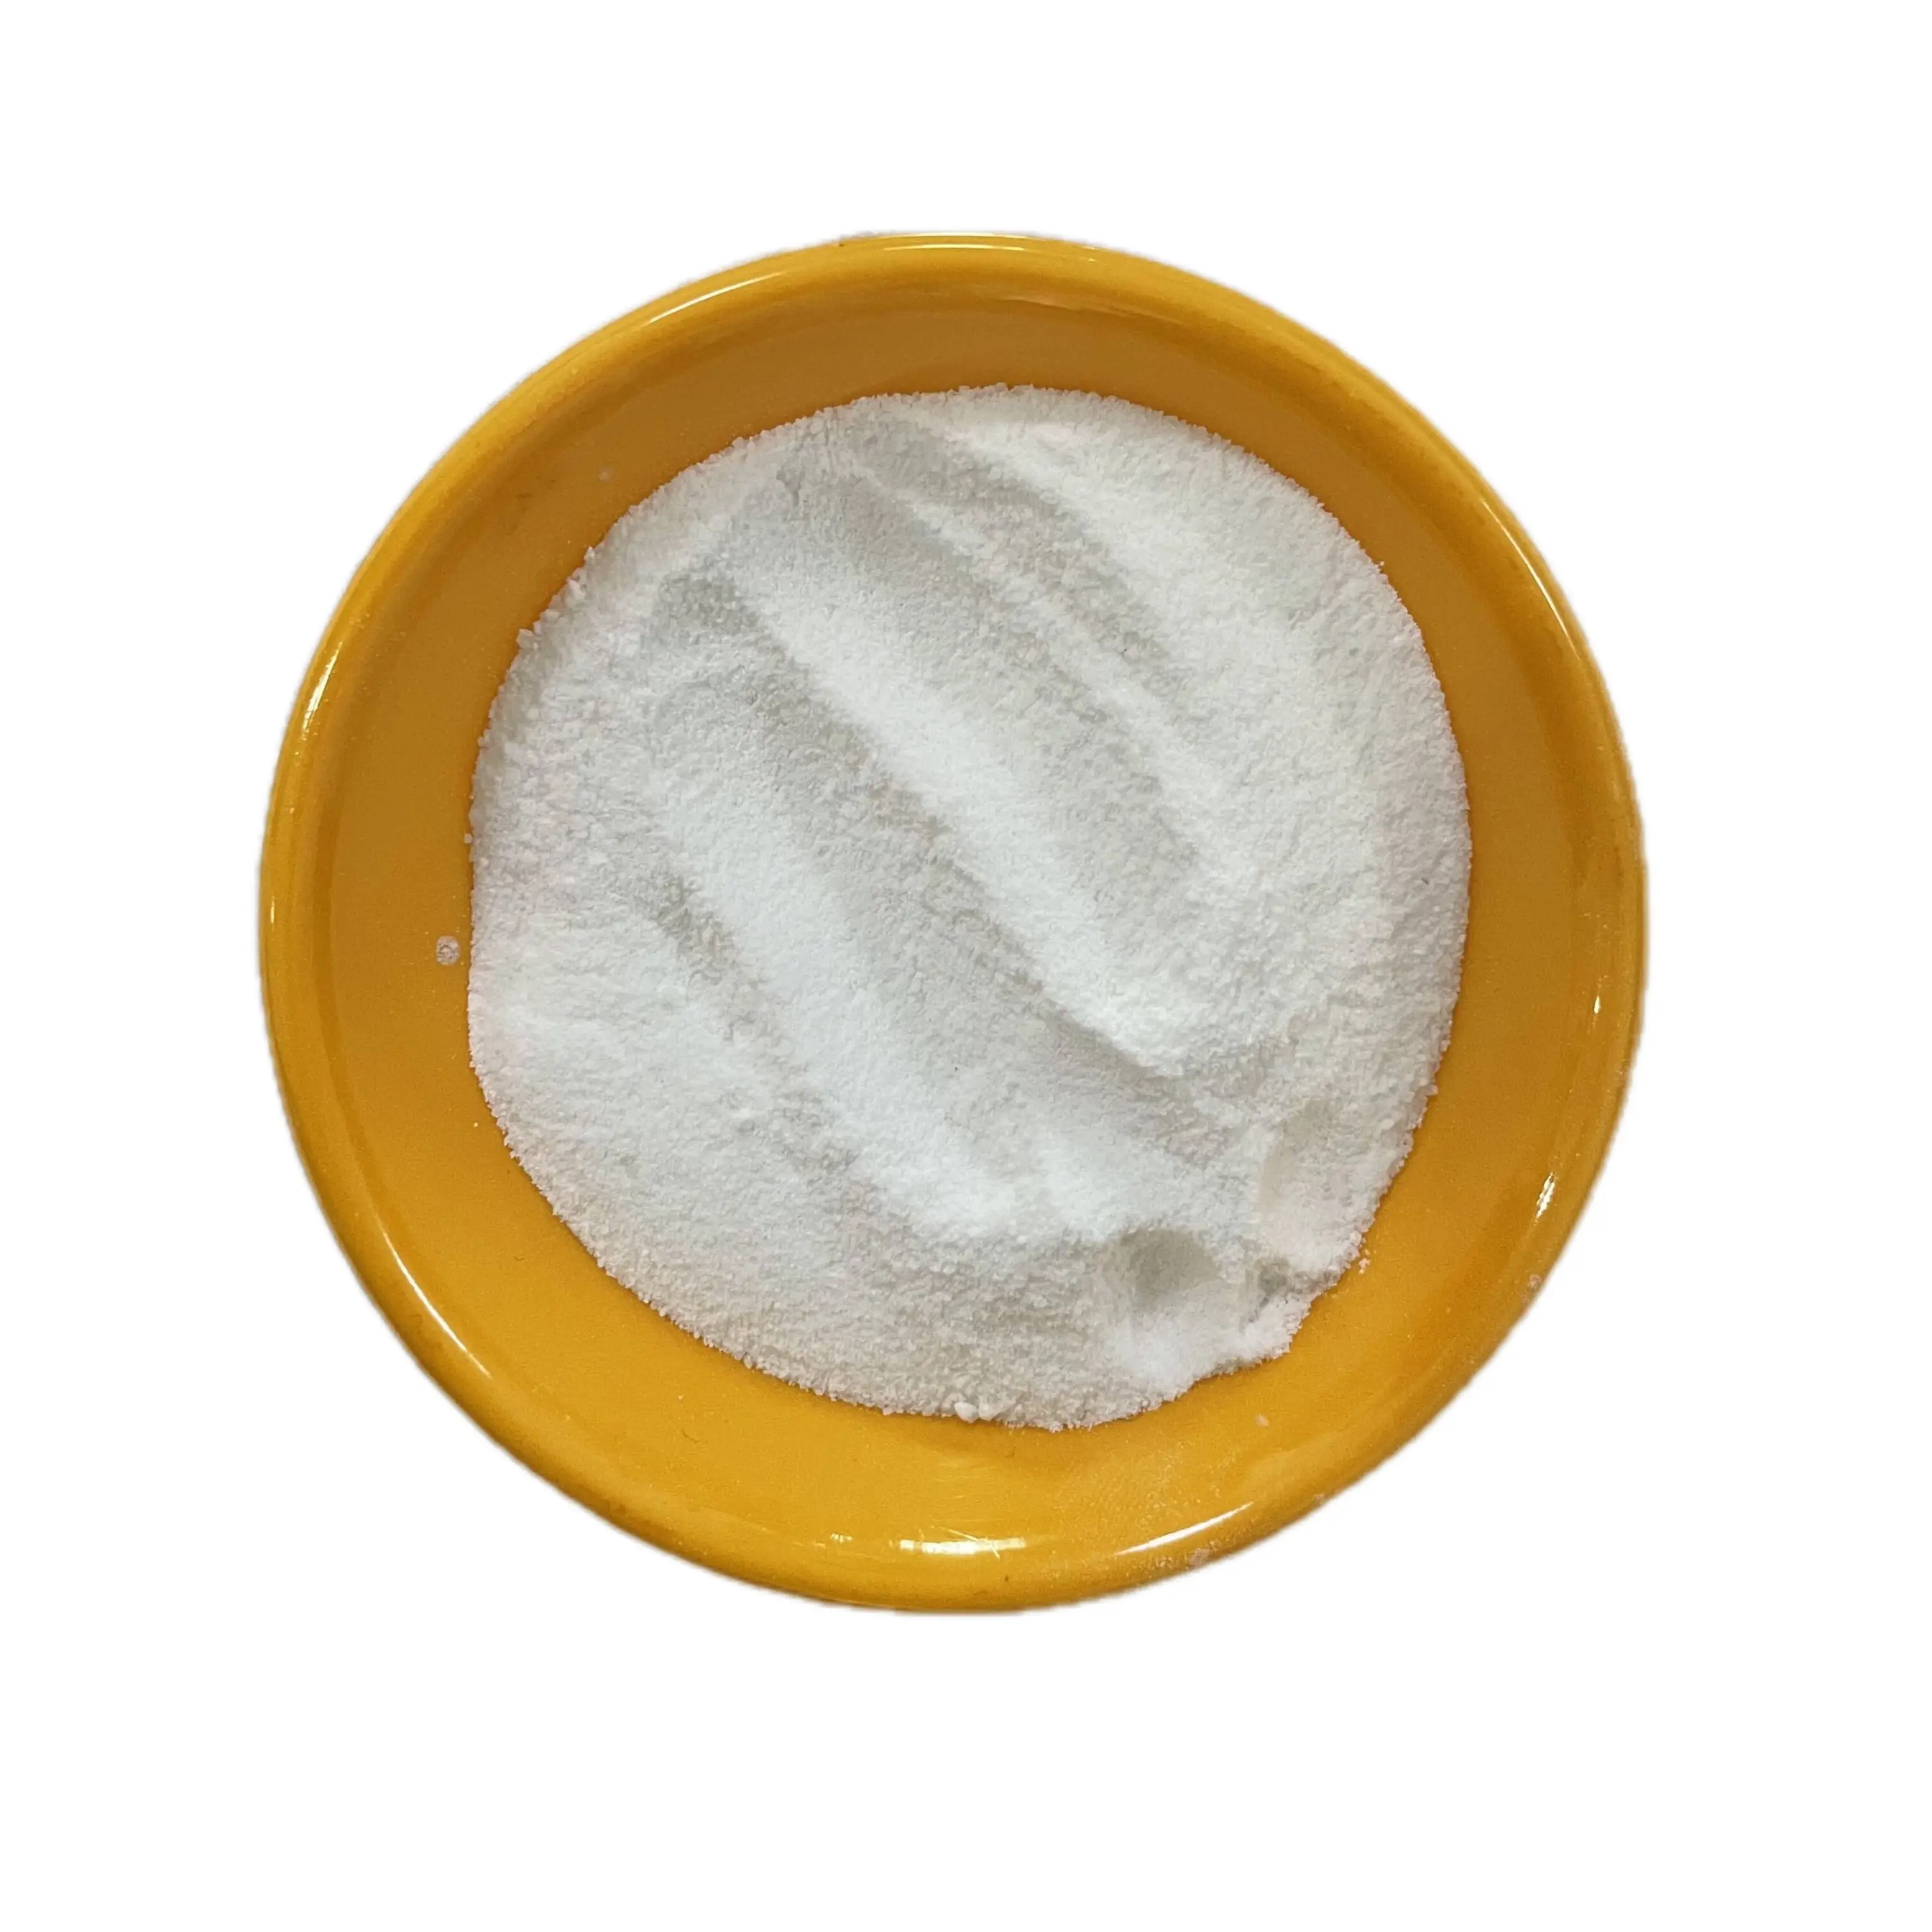 Di alta qualità Hexameta fosfato di sodio (Shmp) all'ingrosso